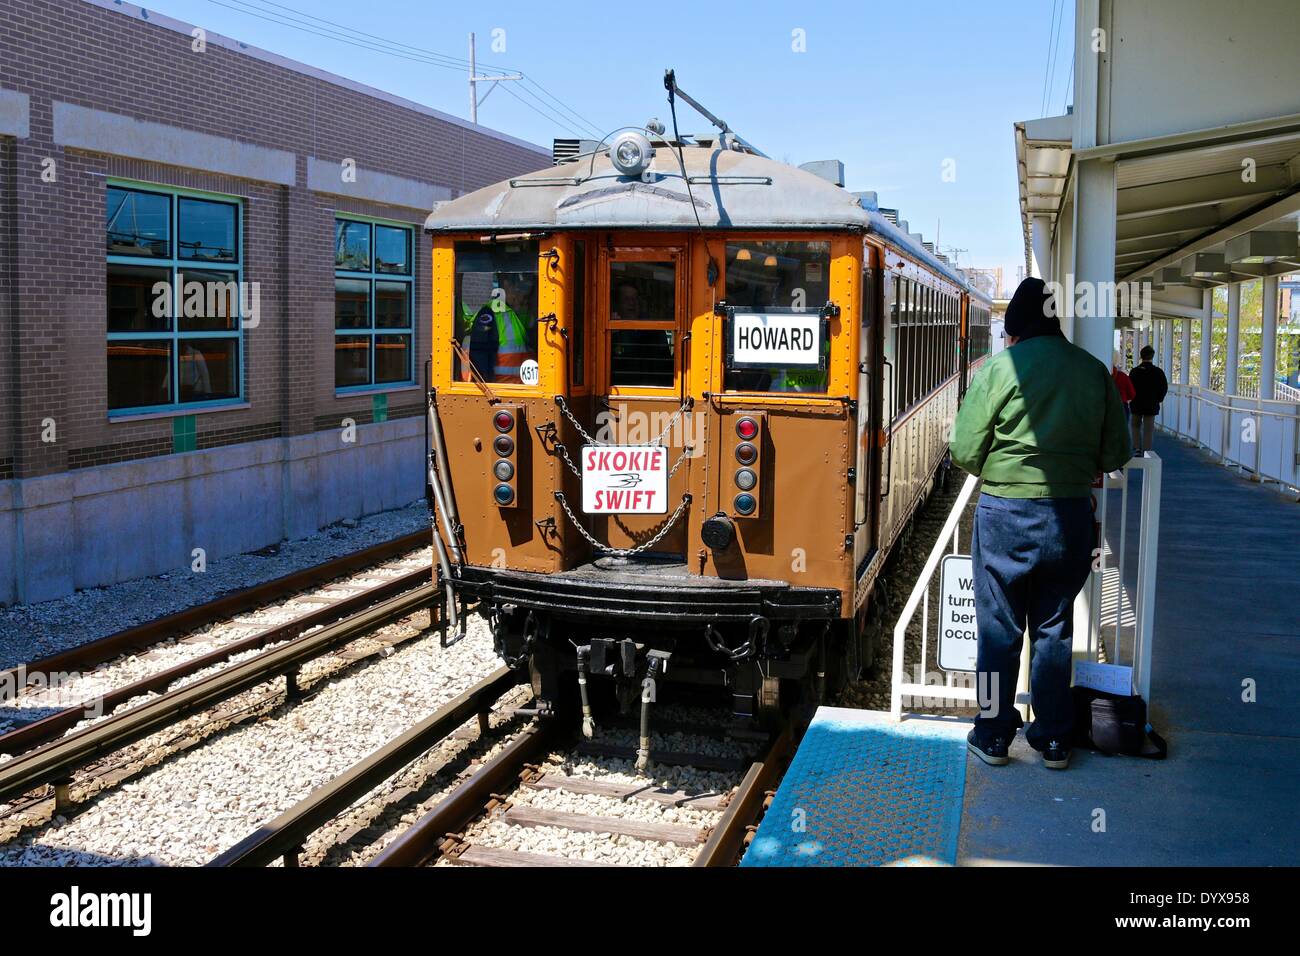 Skokie, Illinois, Stati Uniti d'America. Il 26 aprile 2014. Nella celebrazione dei cinquant'anni di funzionamento di Skokie Swift (linea gialla), il CTA correva 1920s vintage '4000 series' il treno. L'evento ha attirato railfans ma piloti regolari sono stati sorpresi quando il vecchio treno tirato in stazioni. Chiunque potrebbe guidare il treno, regolari tariffe applicate. Qui il treno si avvicina il turnaround a Skokie's Dempster Avenue stazione. Credito: Todd Bannor/Alamy Live News Foto Stock